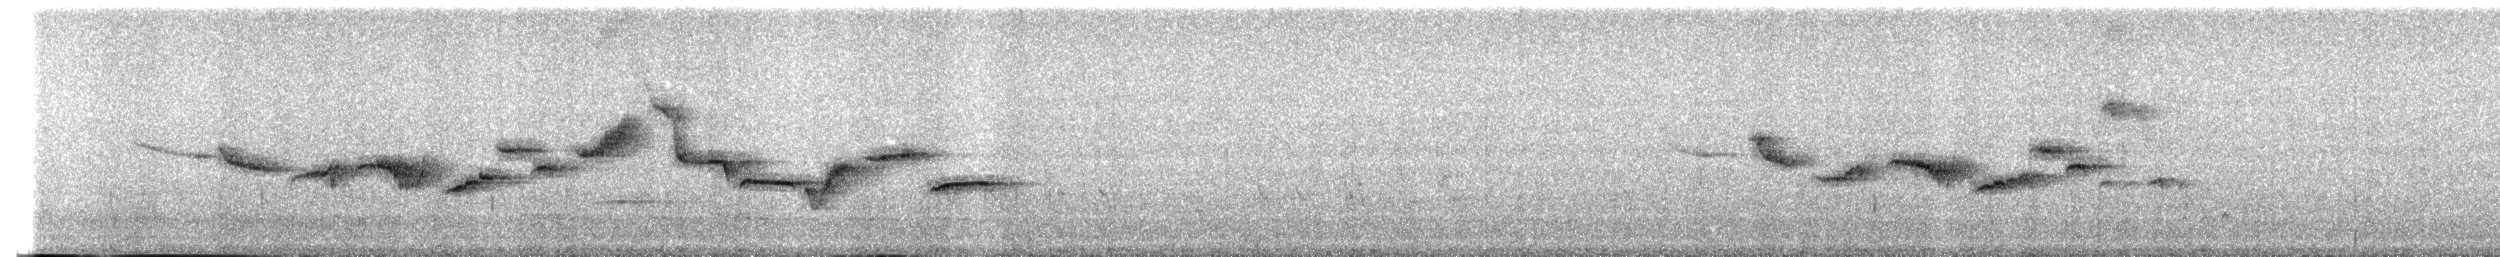 Ak Karınlı Çivit Bülbülü - ML471865611